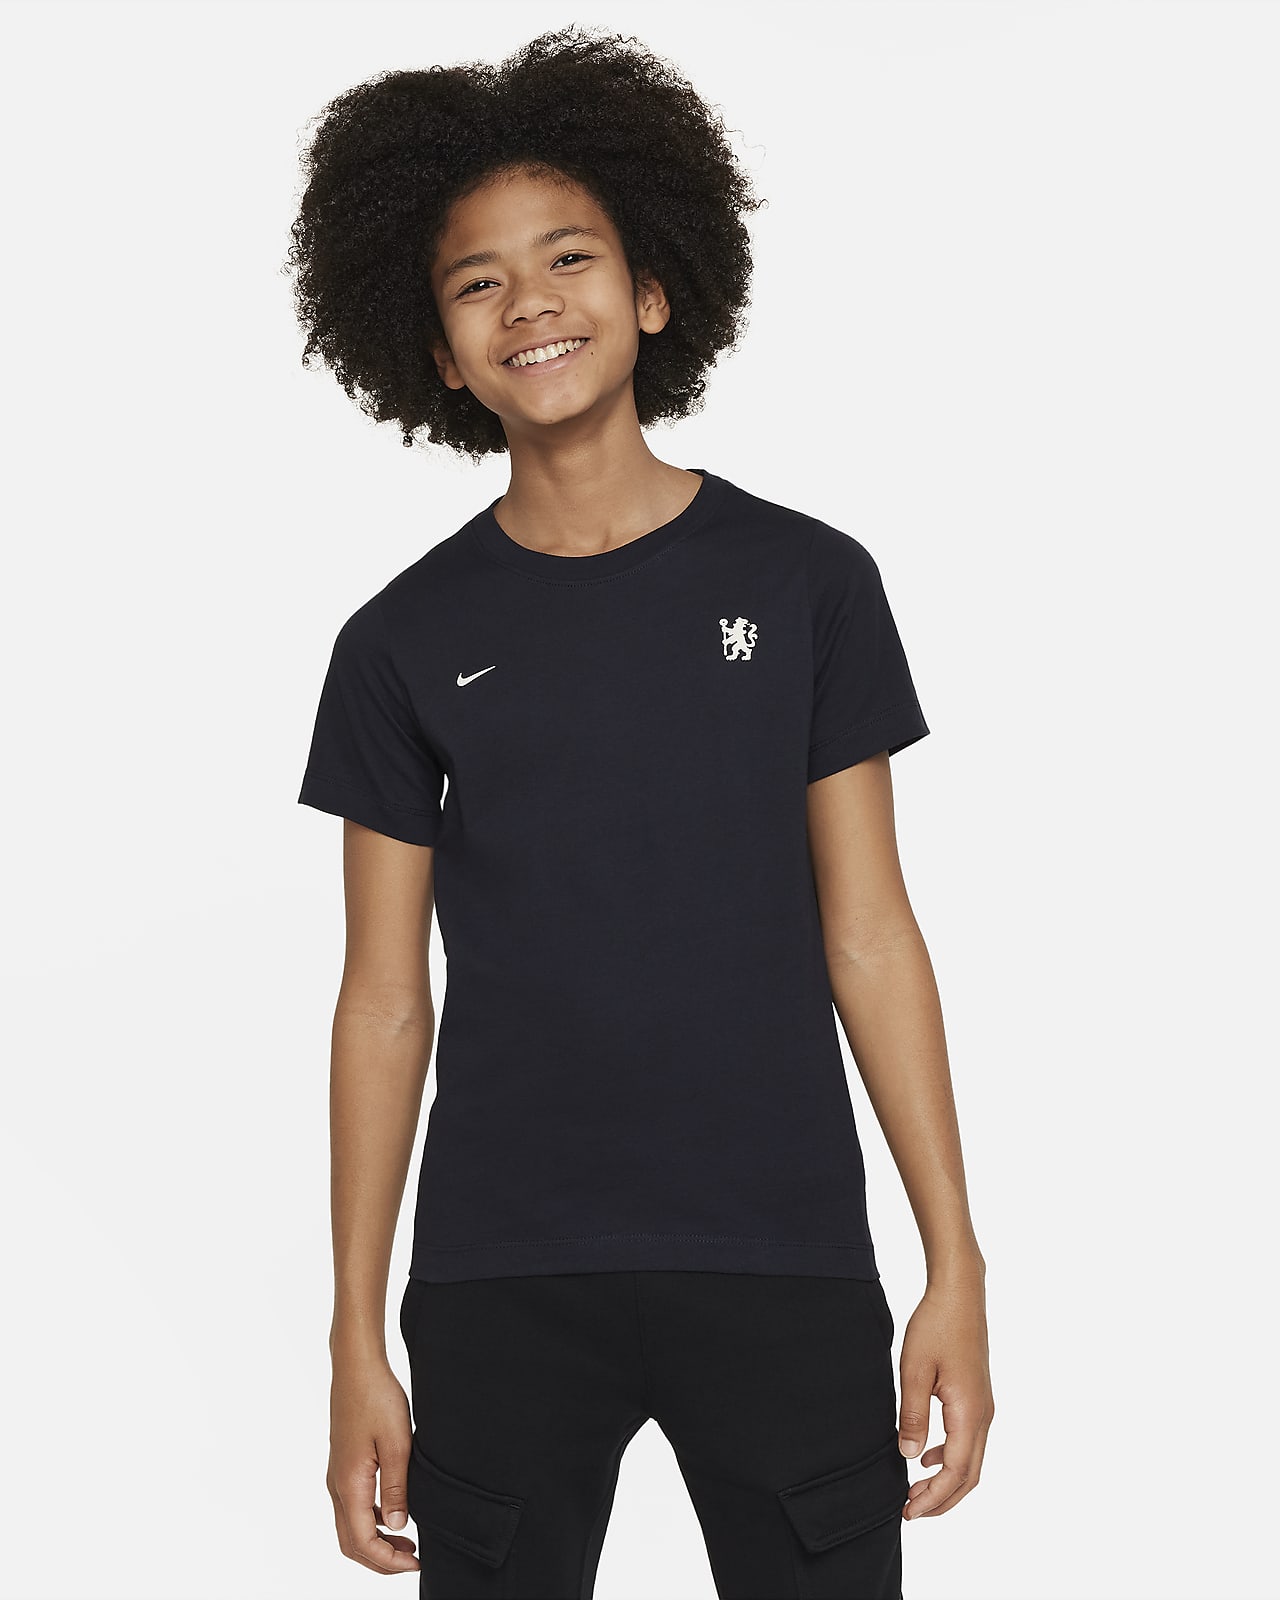 Chelsea F.C. Older Kids' Nike Football T-Shirt